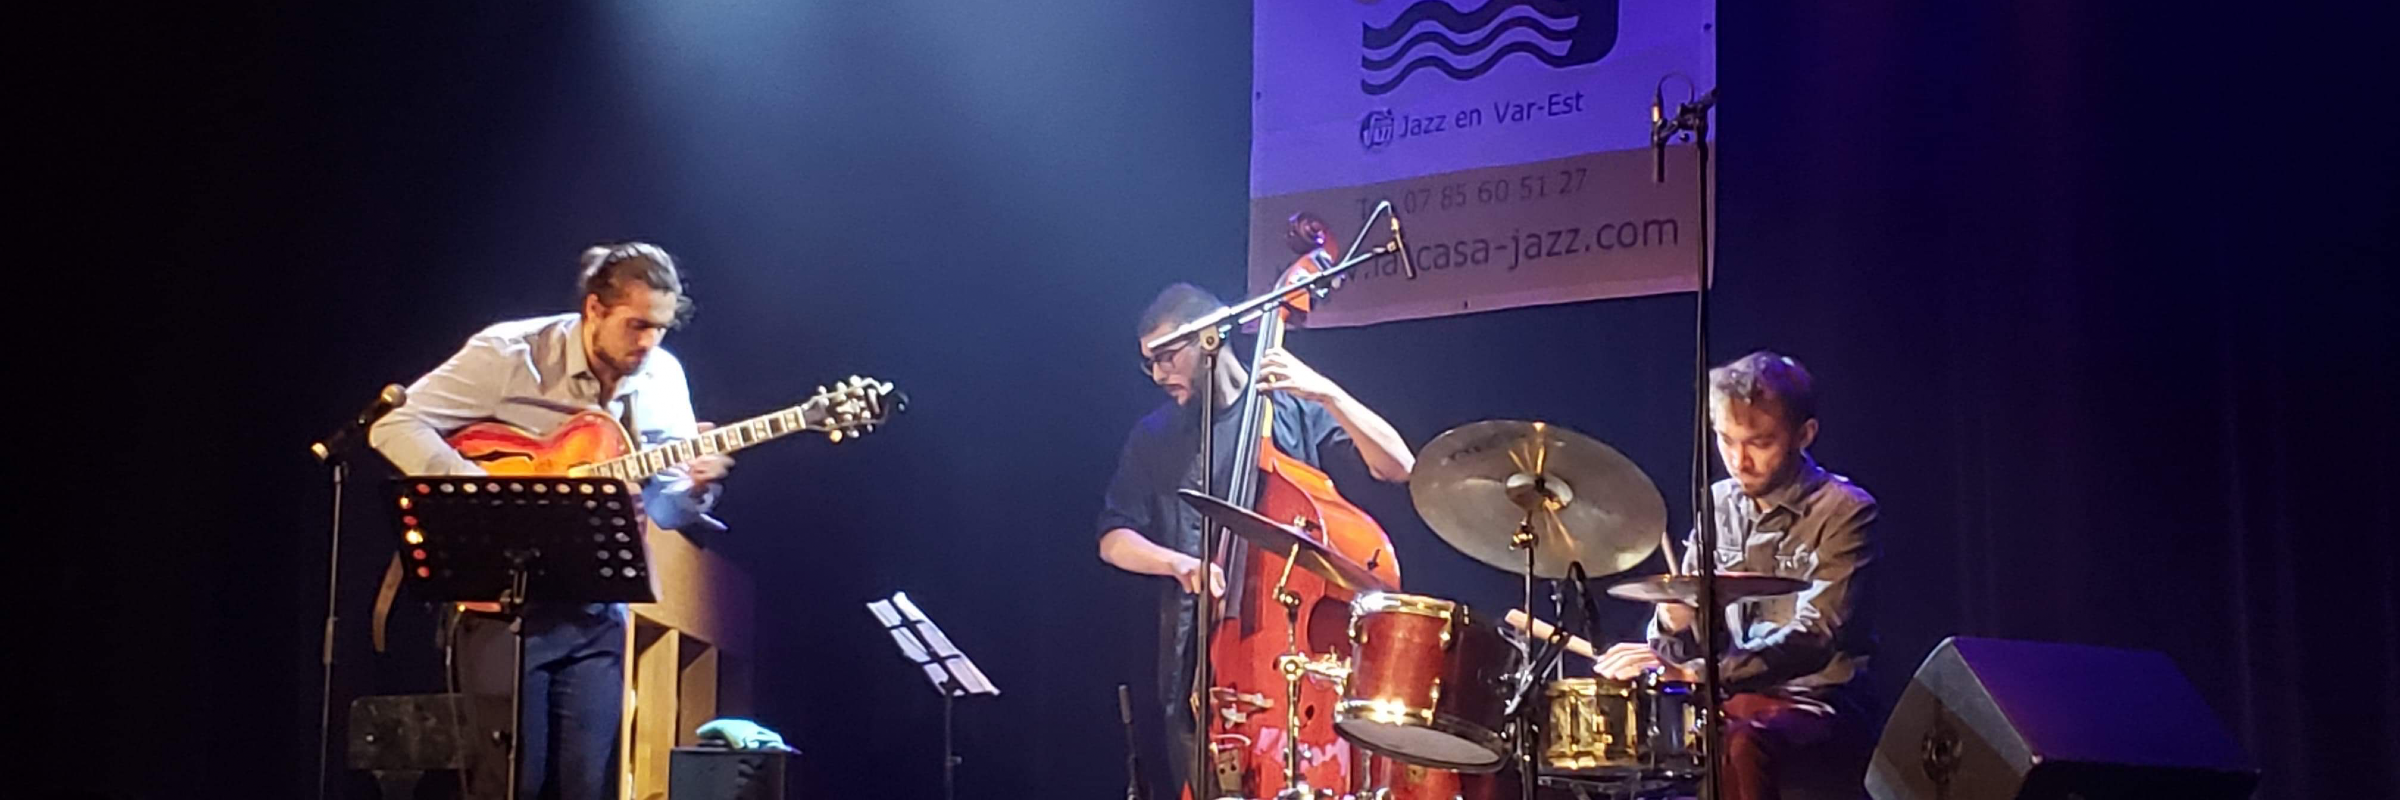 Mediteranean Jazz Trio, groupe de musique Jazz en représentation à Alpes Maritimes - photo de couverture